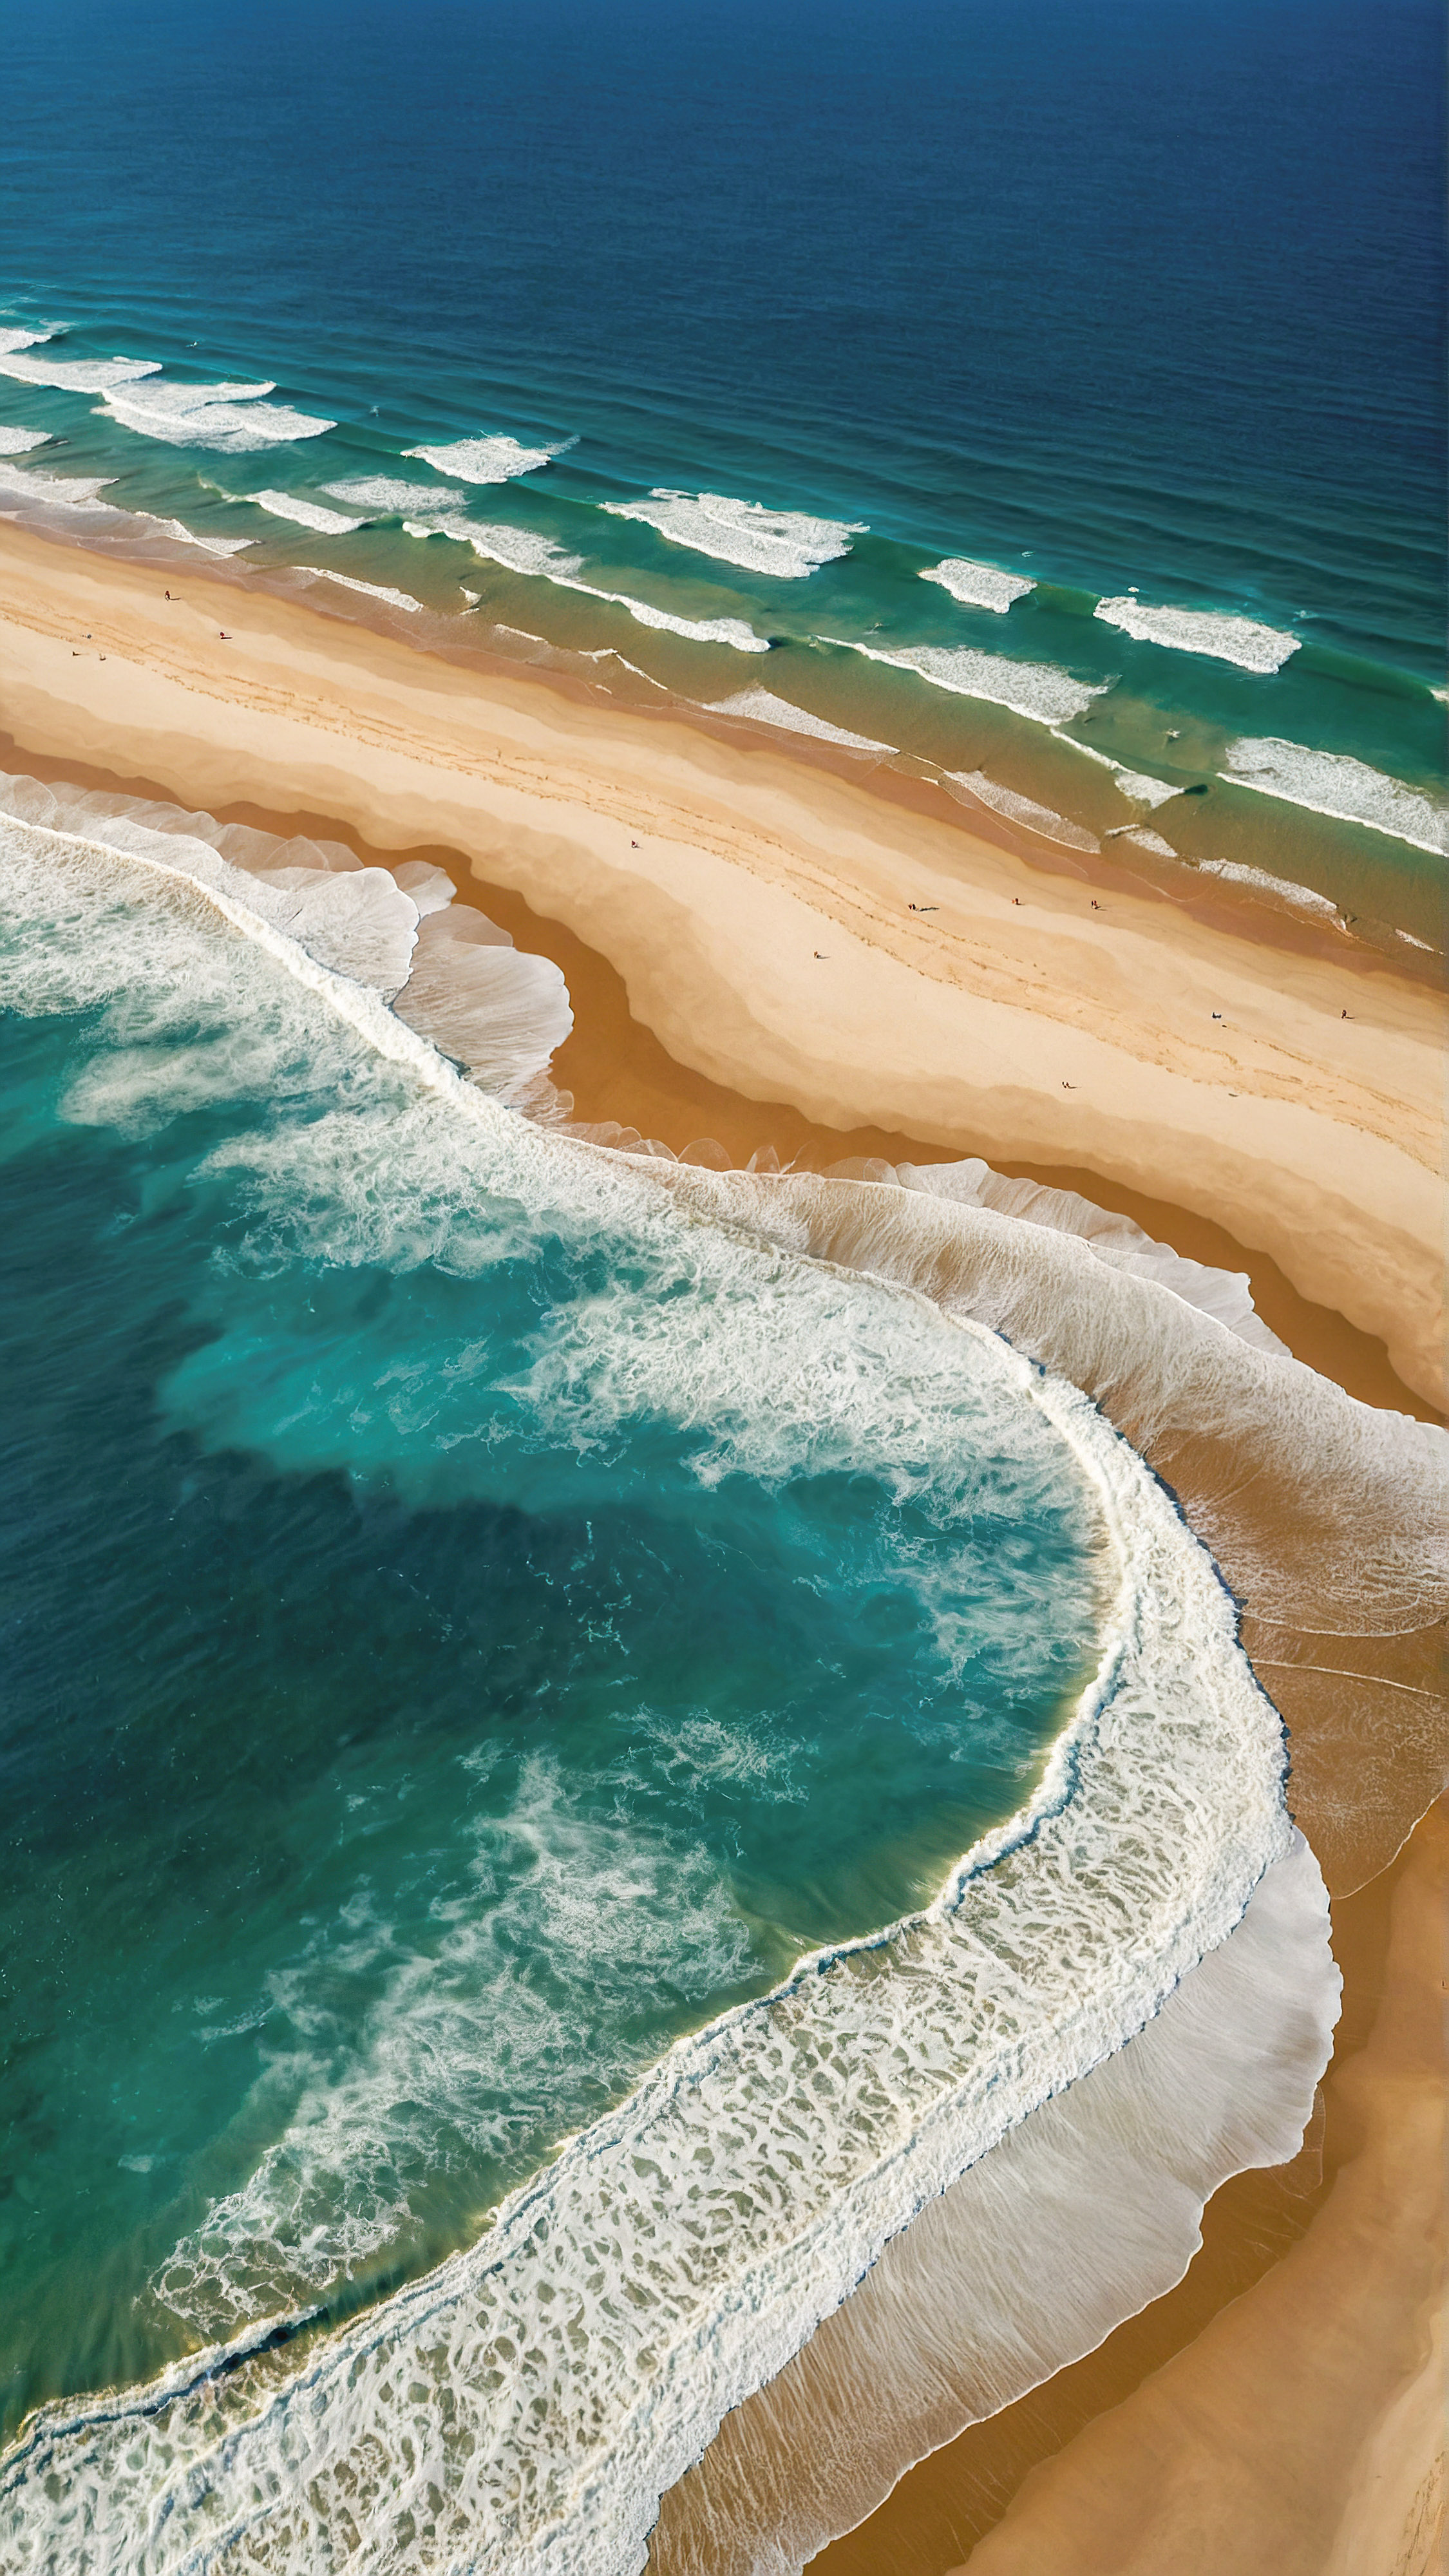 Faites l'expérience de la vue aérienne époustouflante de notre fond d'écran pour iPhone en Ultra HD 4K, présentant une plage avec un océan bleu profond, ses nuances plus claires indiquant le mouvement des vagues blanches et mousseuses rencontrant le rivage sablonneux de couleur brun clair.